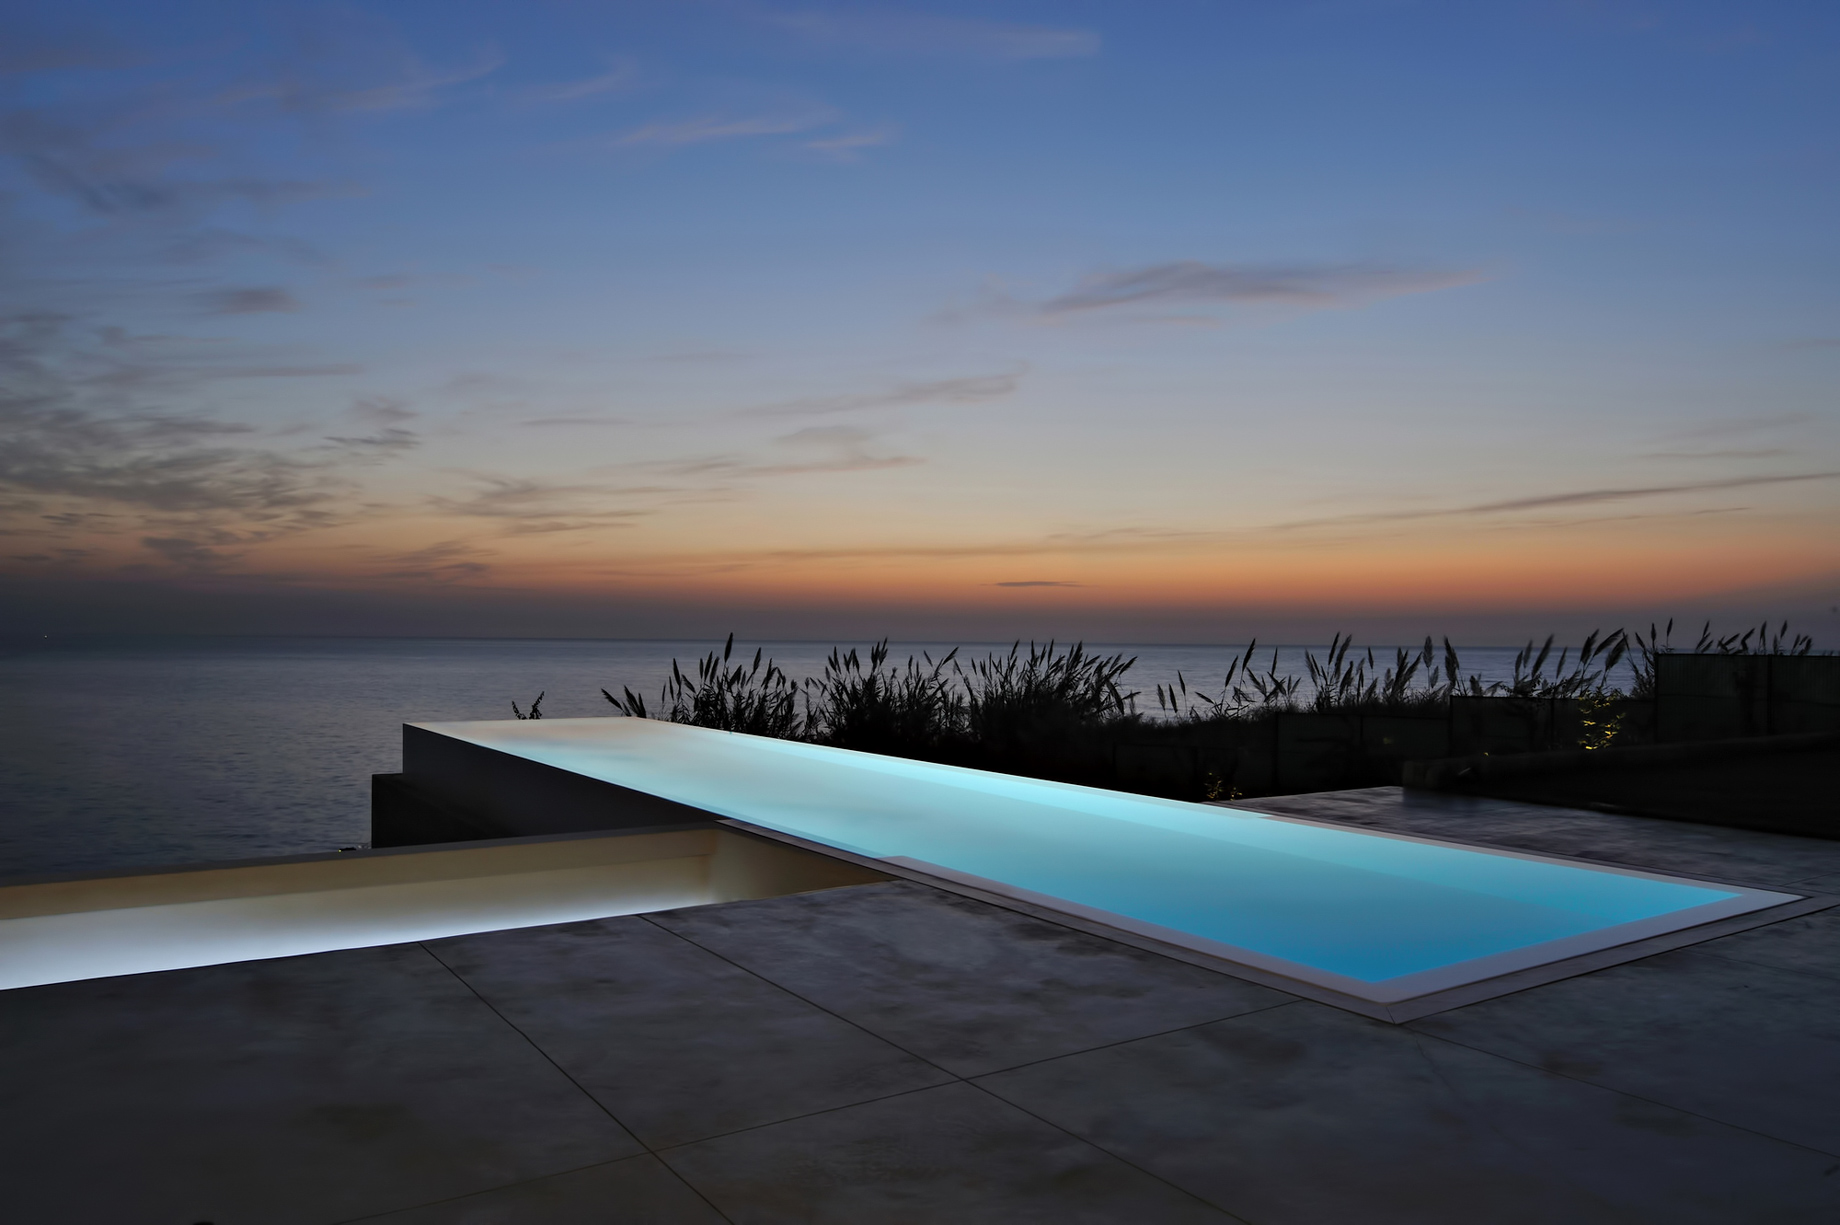 Fidar Beach House Luxury Residence – Fidar, Jbeil, Lebanon